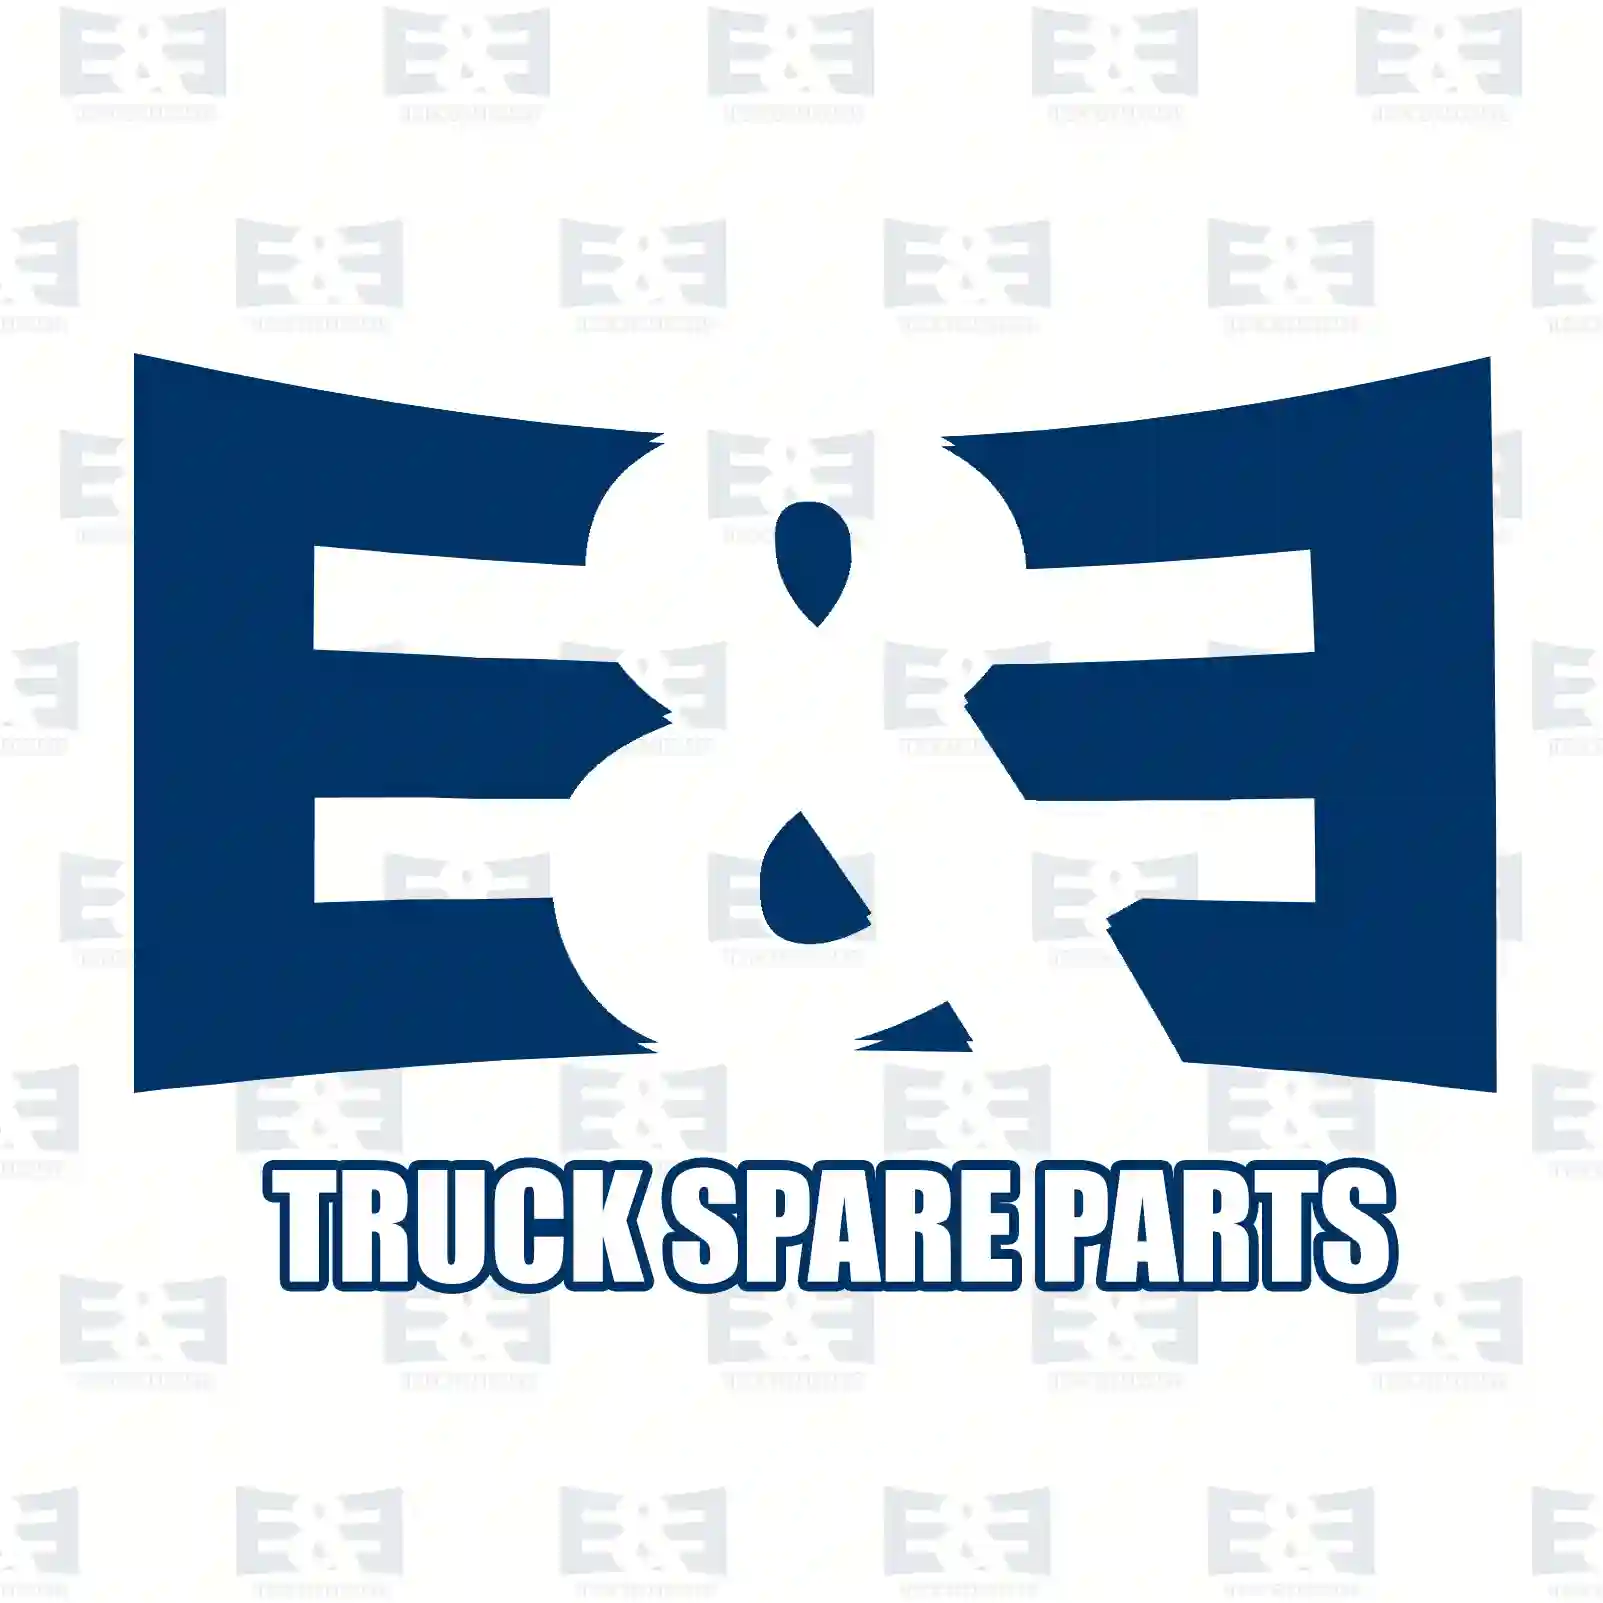 Propeller shaft, 2E2276733, 500391651 ||  2E2276733 E&E Truck Spare Parts | Truck Spare Parts, Auotomotive Spare Parts Propeller shaft, 2E2276733, 500391651 ||  2E2276733 E&E Truck Spare Parts | Truck Spare Parts, Auotomotive Spare Parts